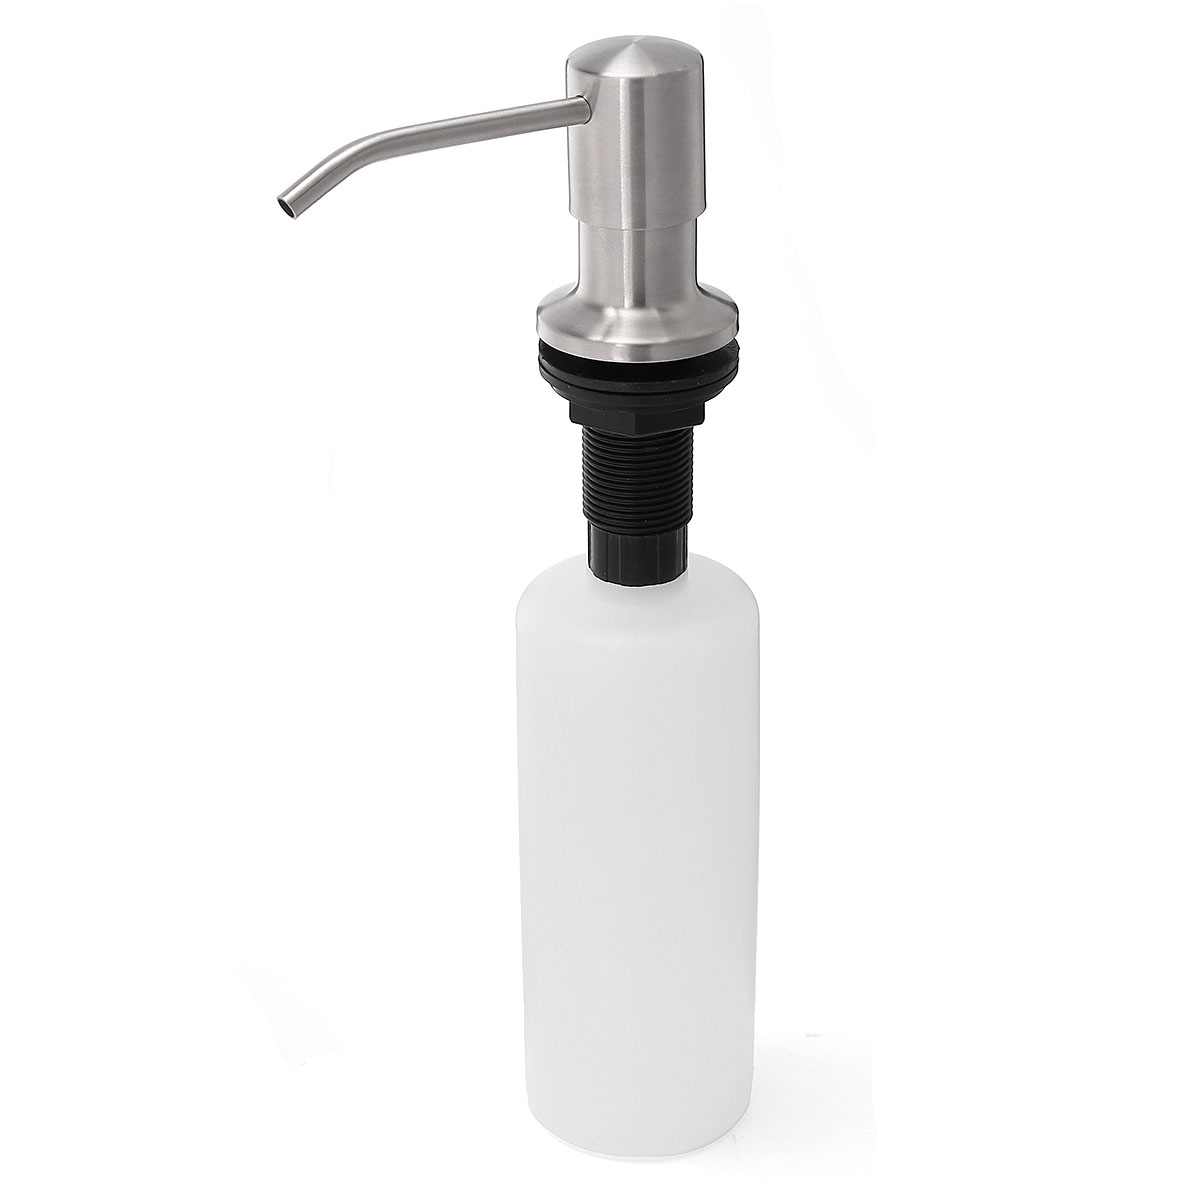 Stainless Steel Press Soap Dispenser Hair Shampoo 500ml